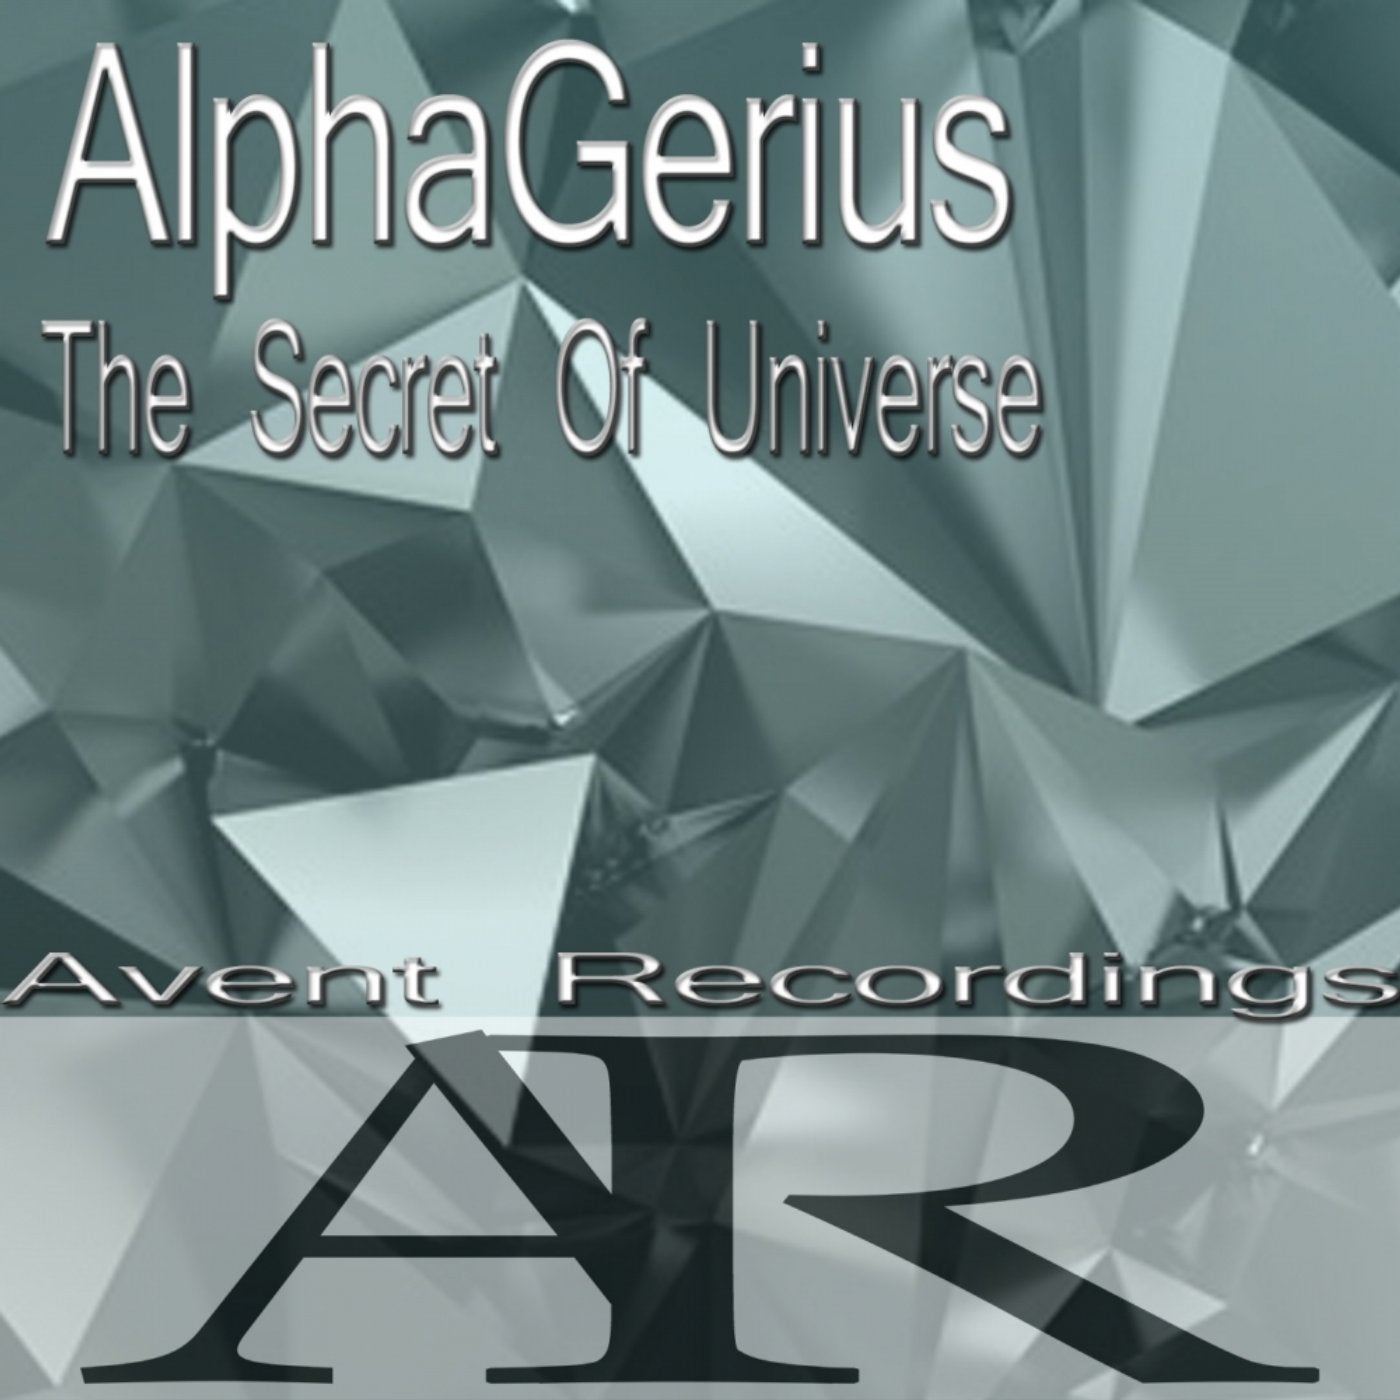 AlphaGerius